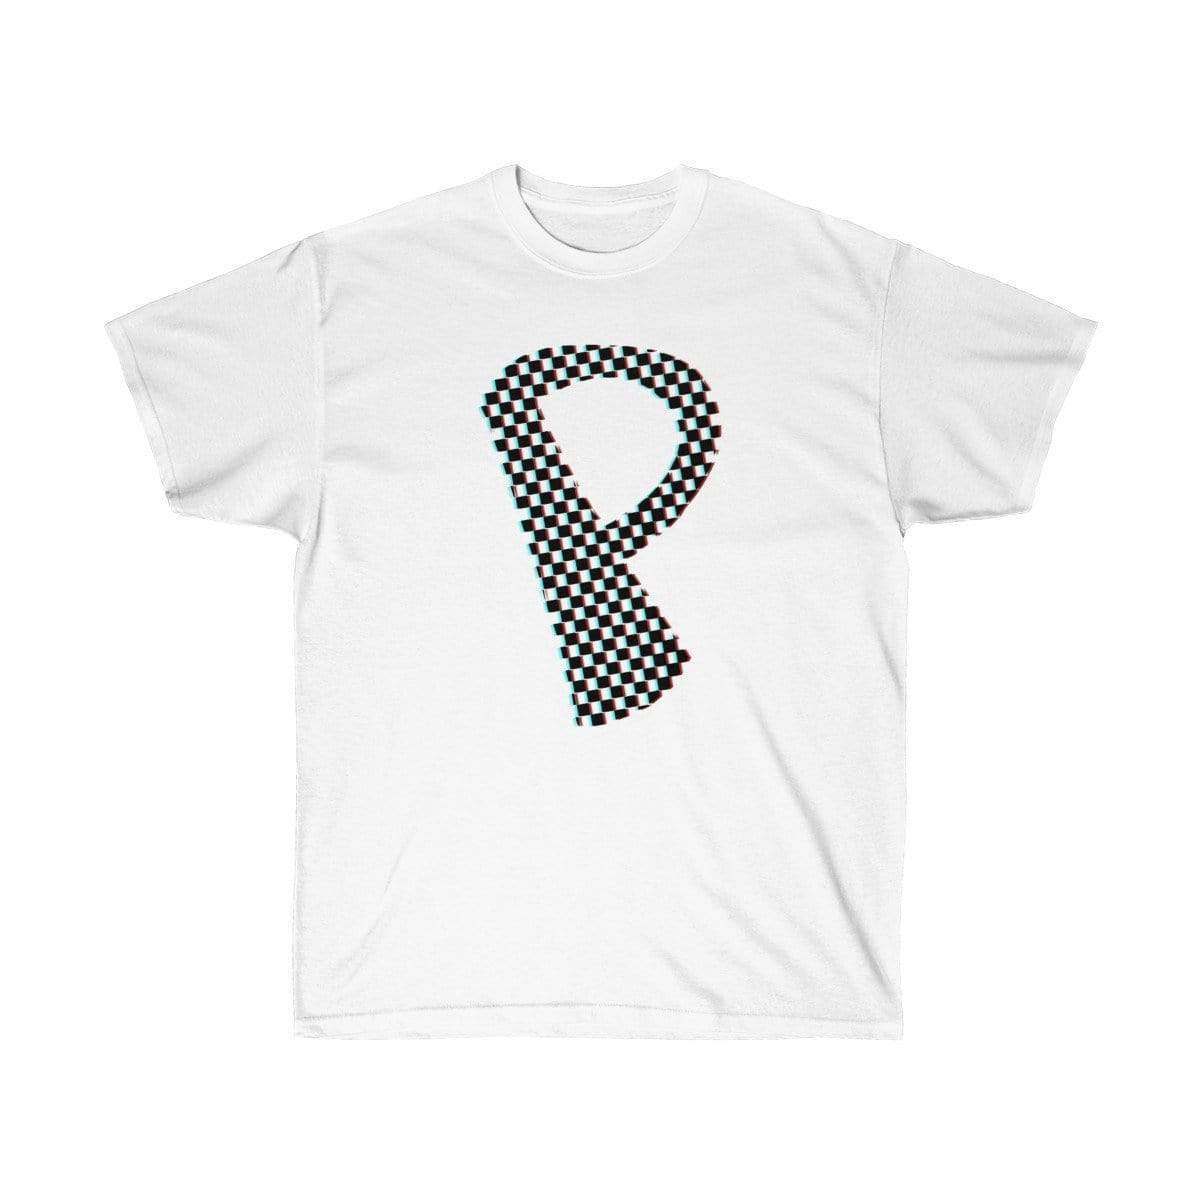 Plumskum T-Shirt White / L Dark Checkered, Glitchy, Capital P T-Shirt